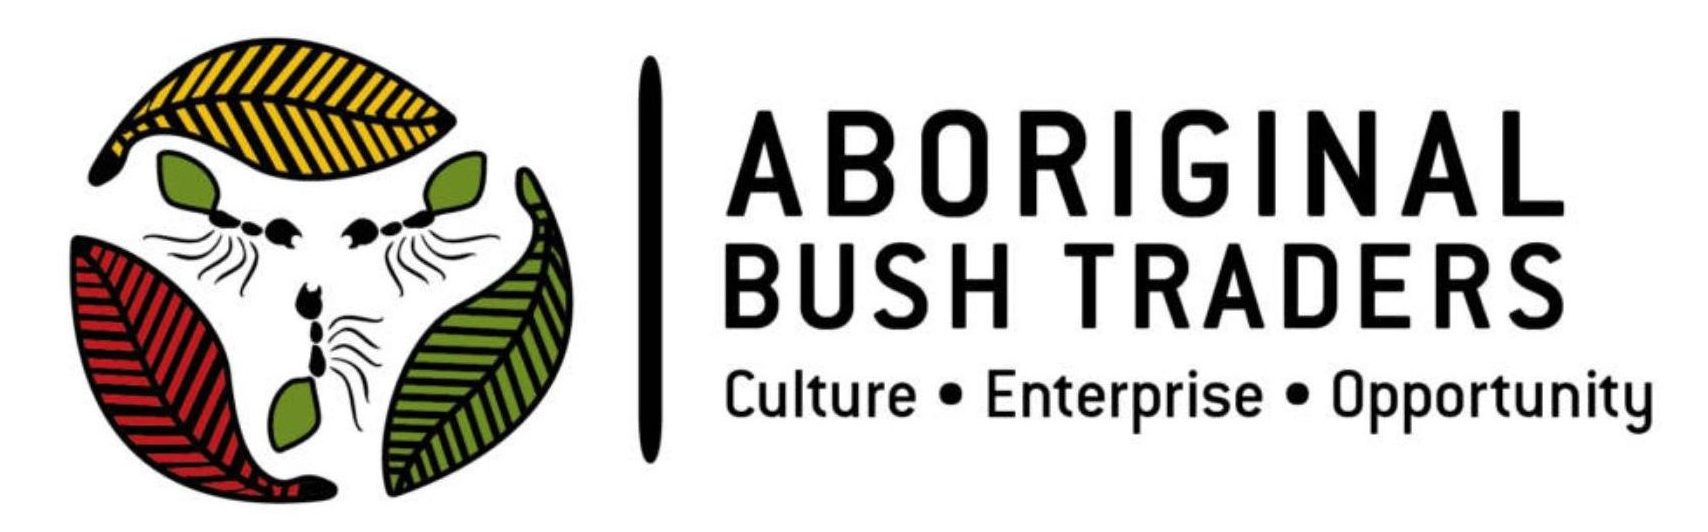 3756-aboriginal-bush-traders-logo